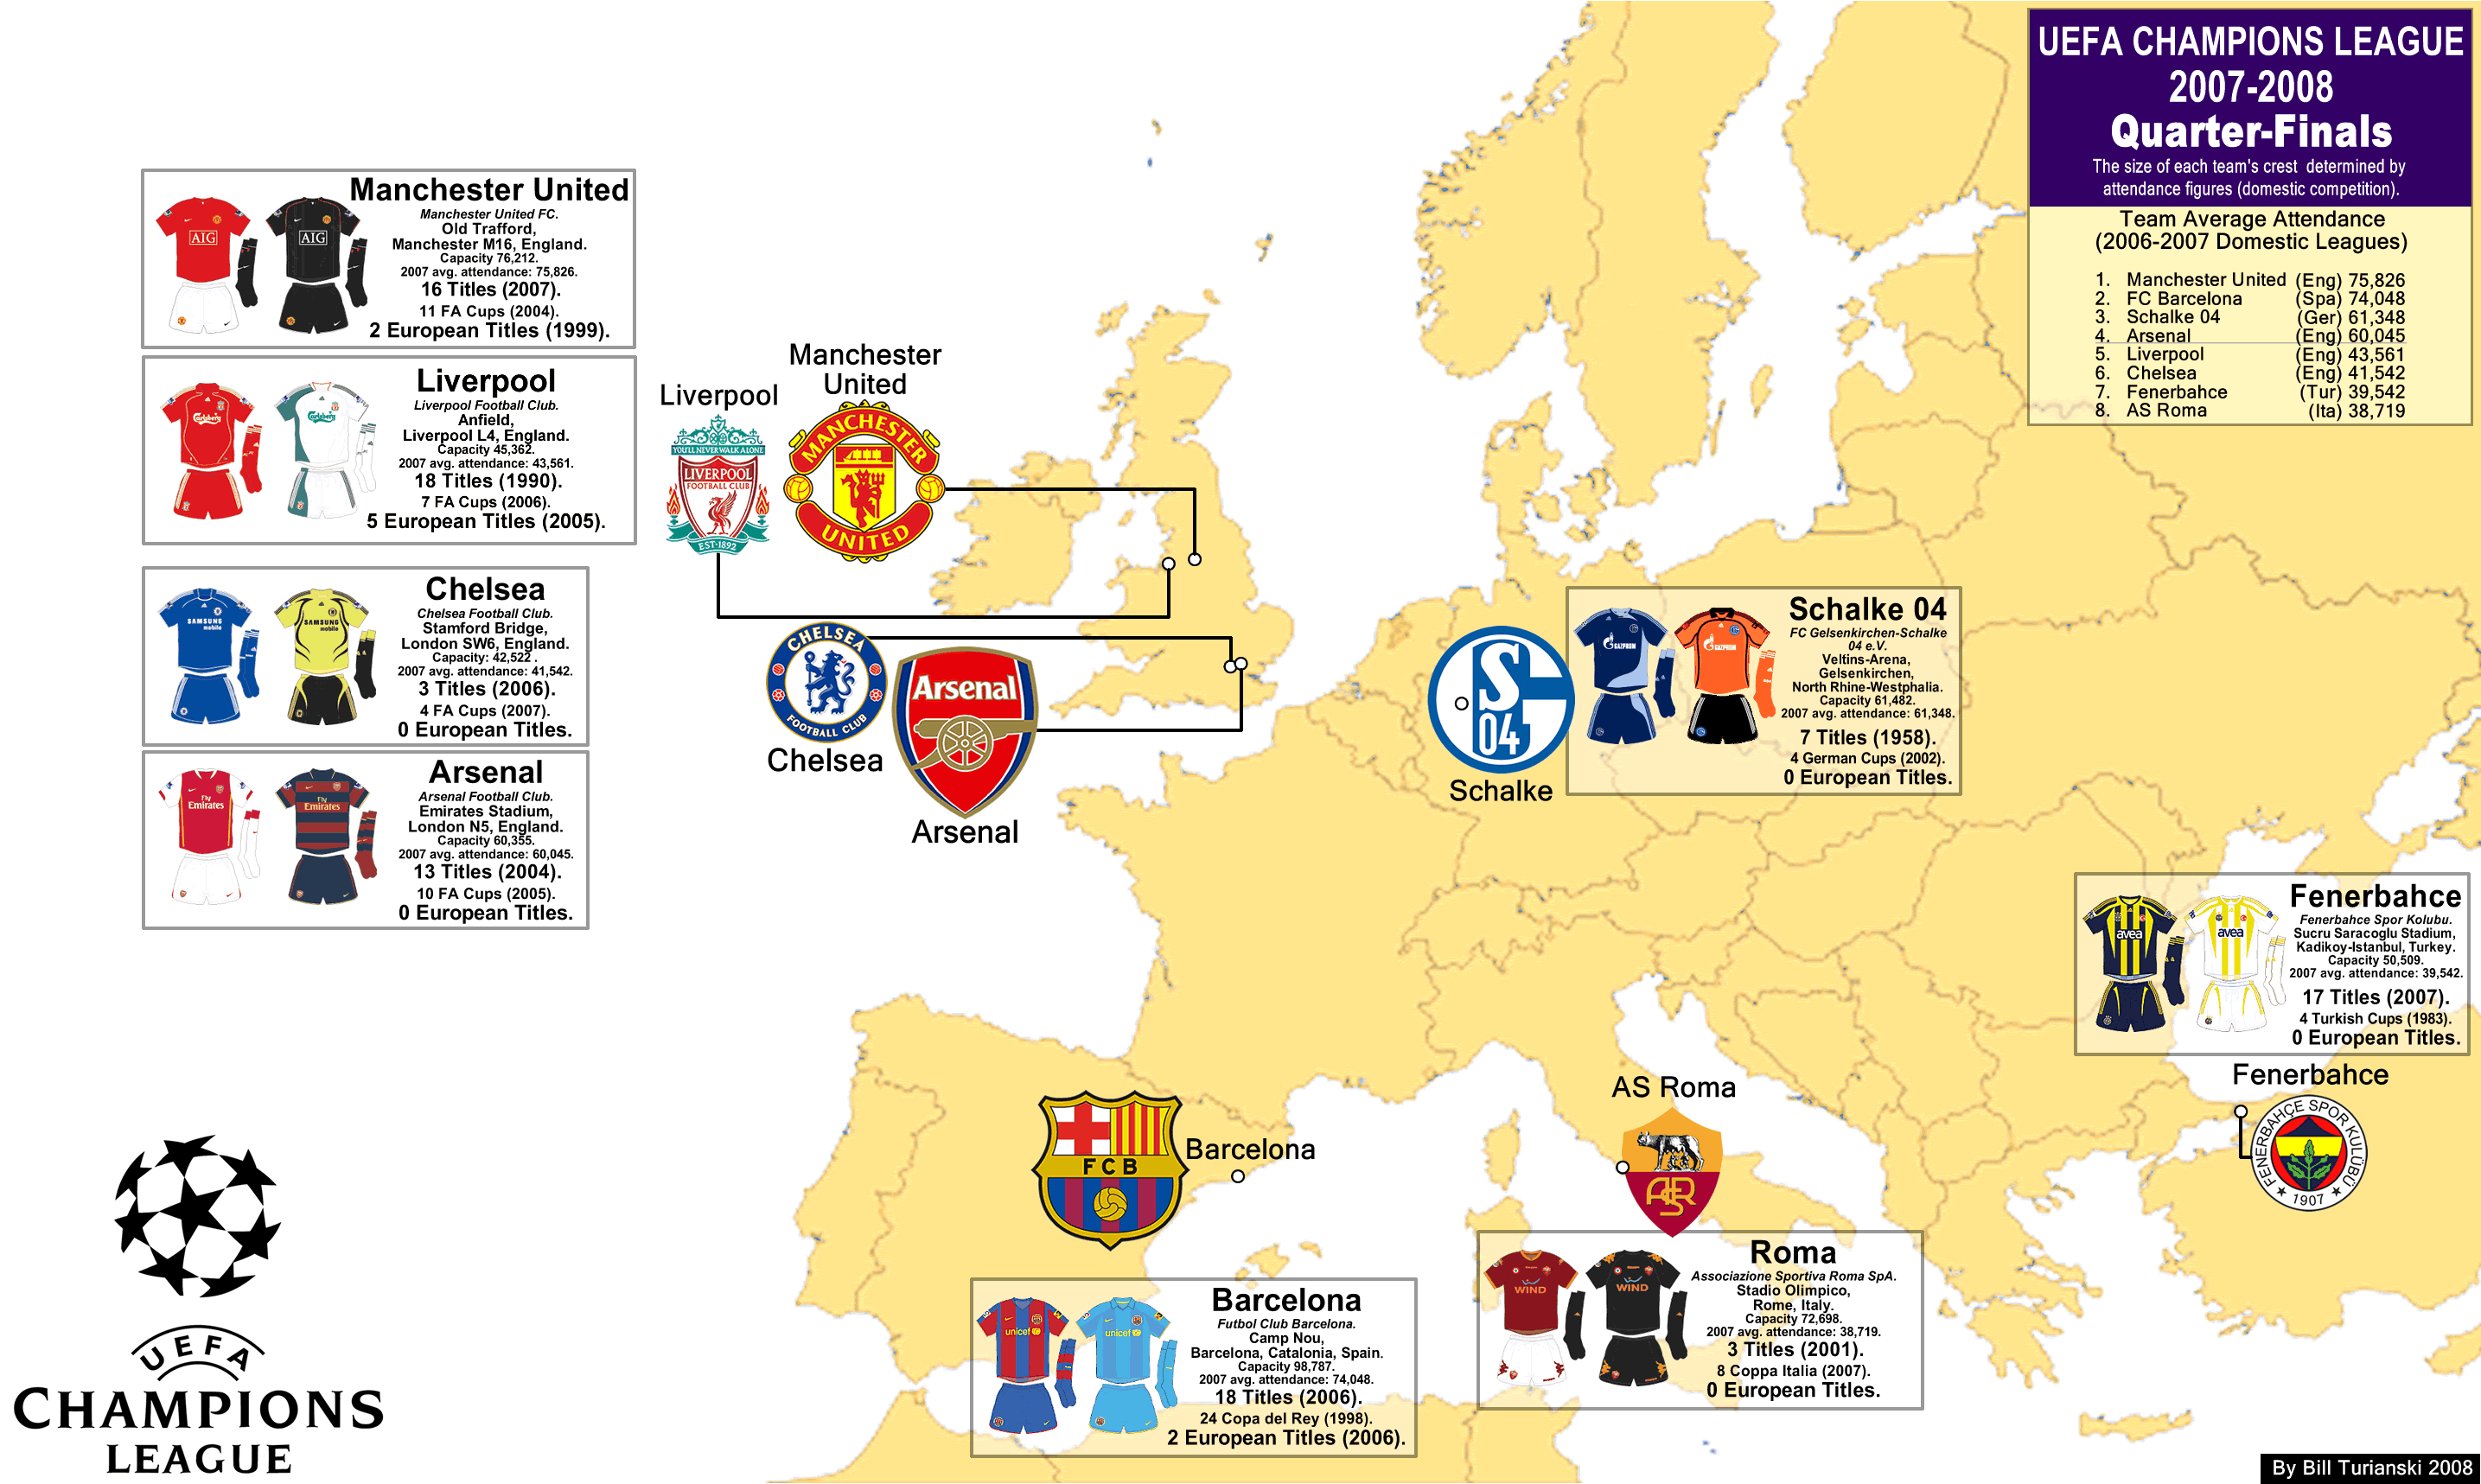 champions league final 8 teams